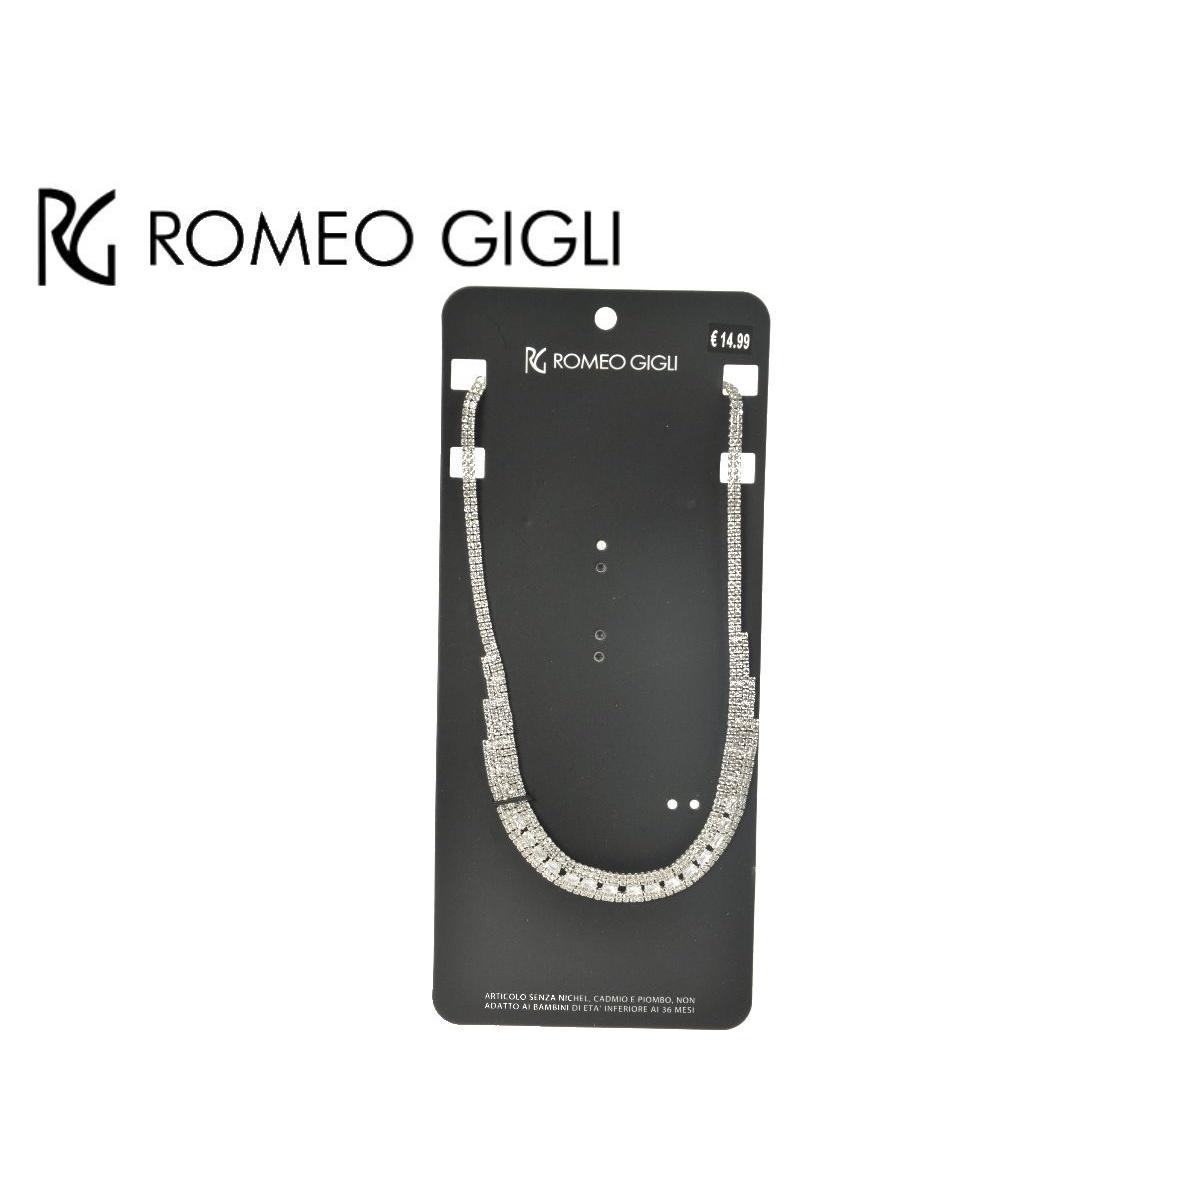 Collana donna RG Romeo Gigli